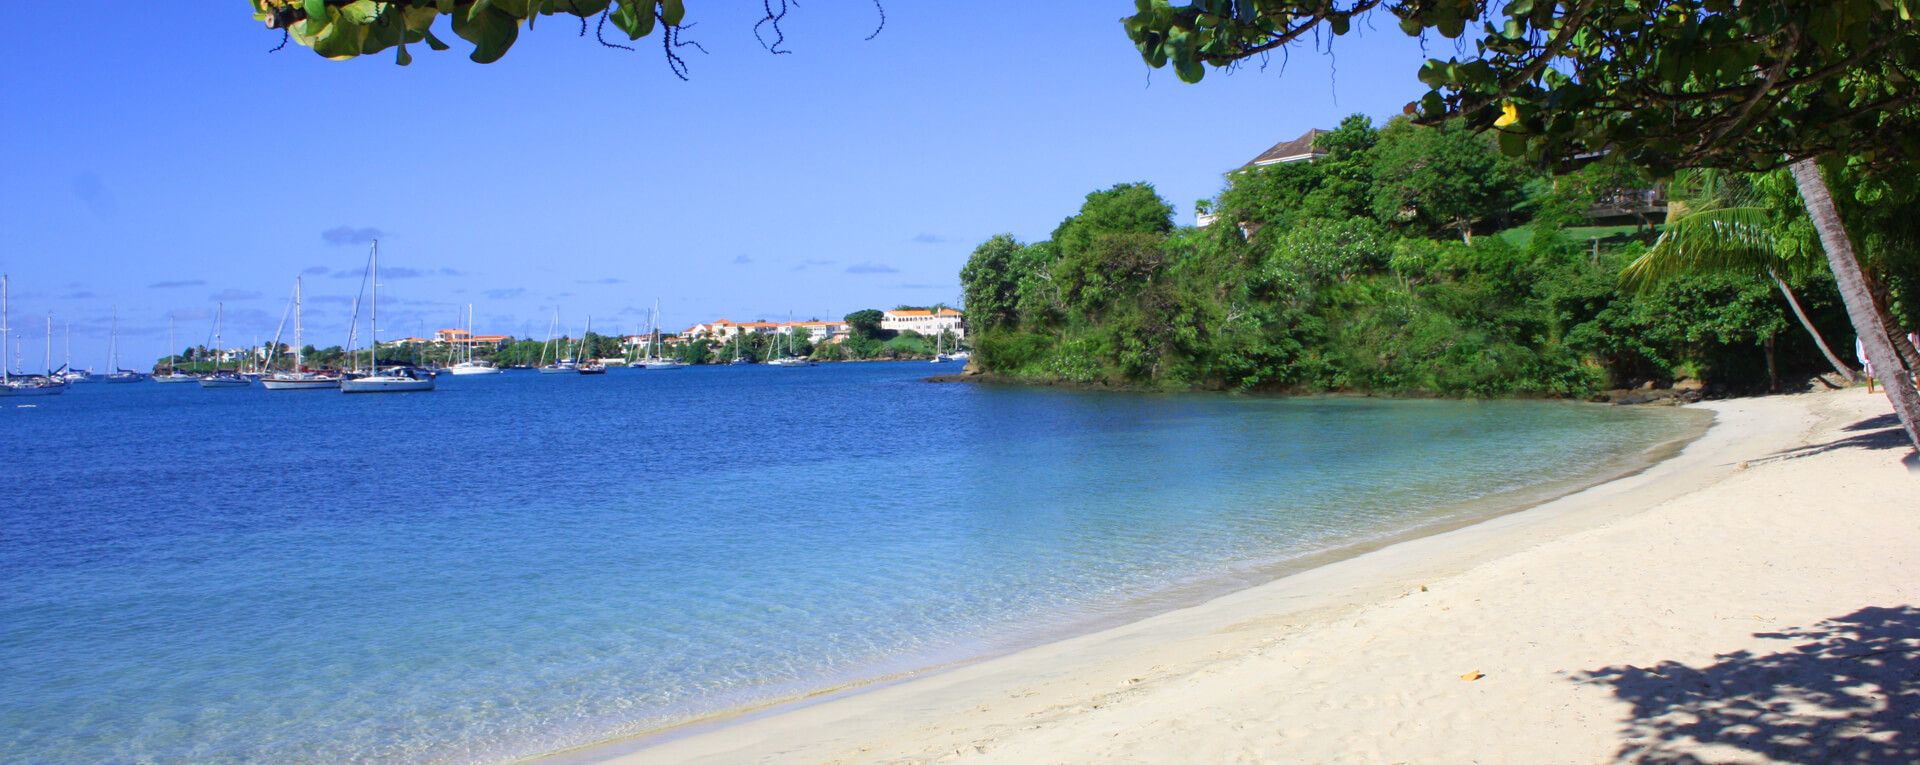 Calabash Grenada